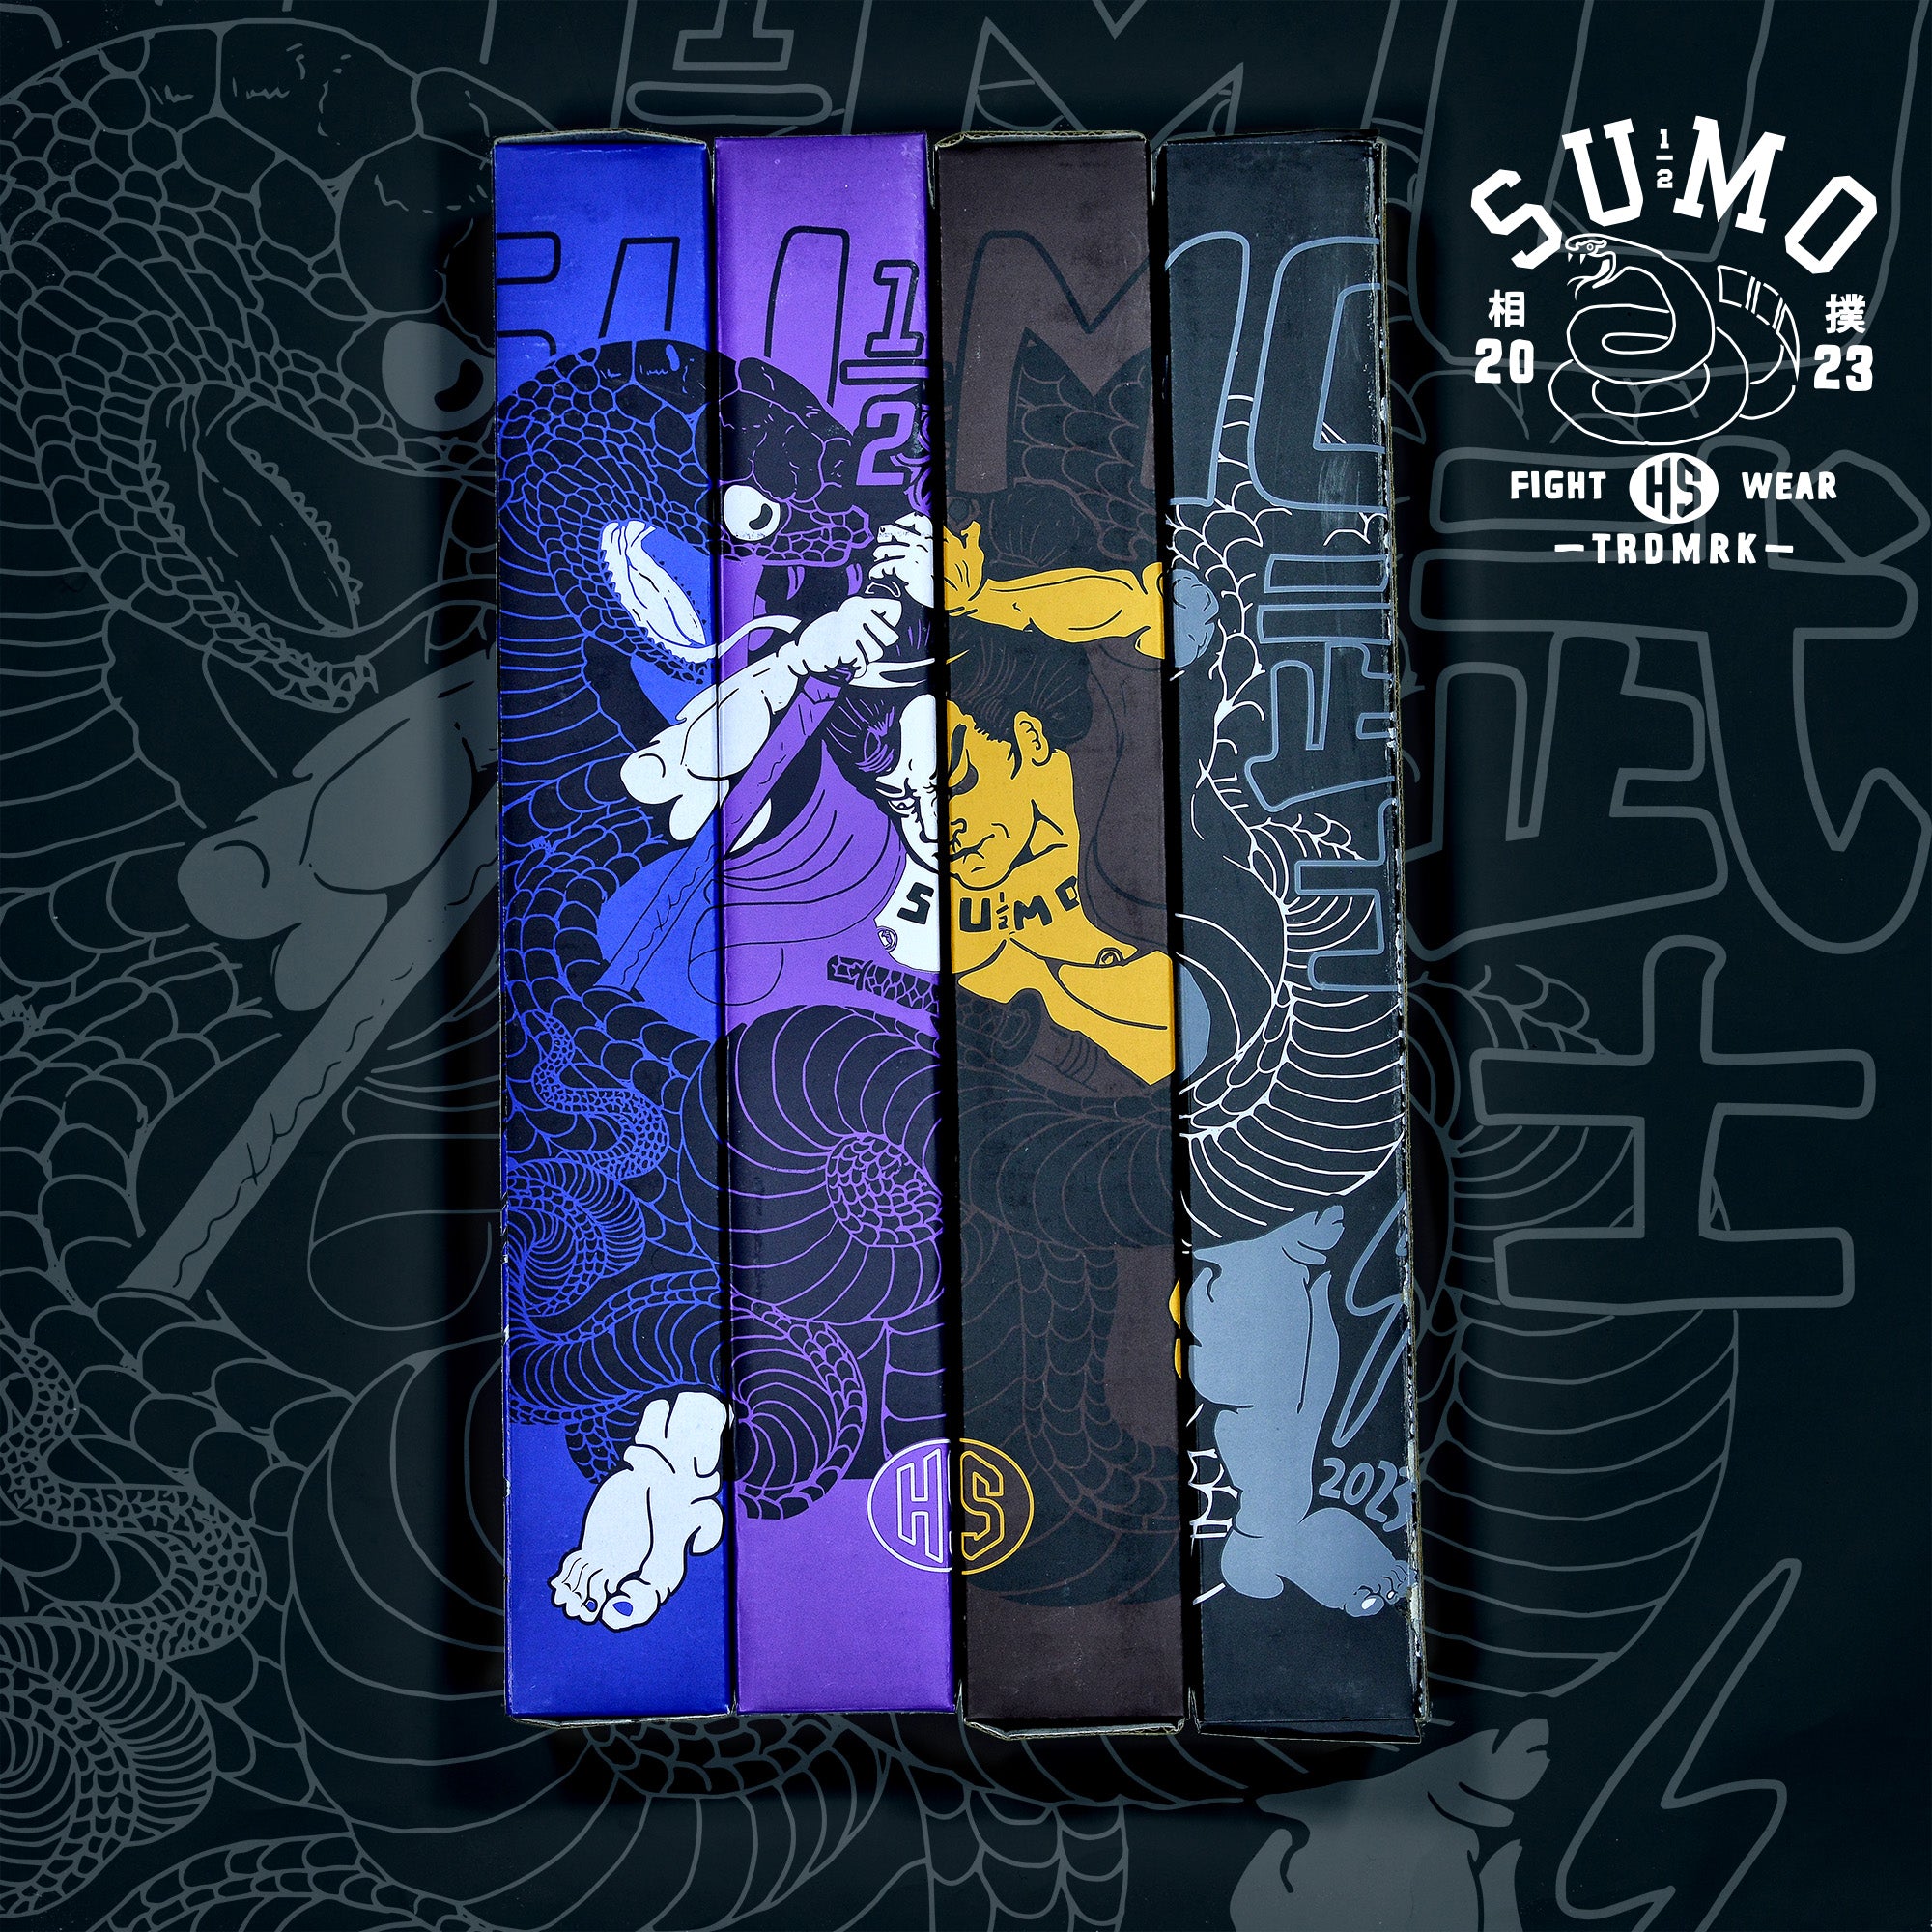 Murder Yoga Sticker Set – Half Sumo